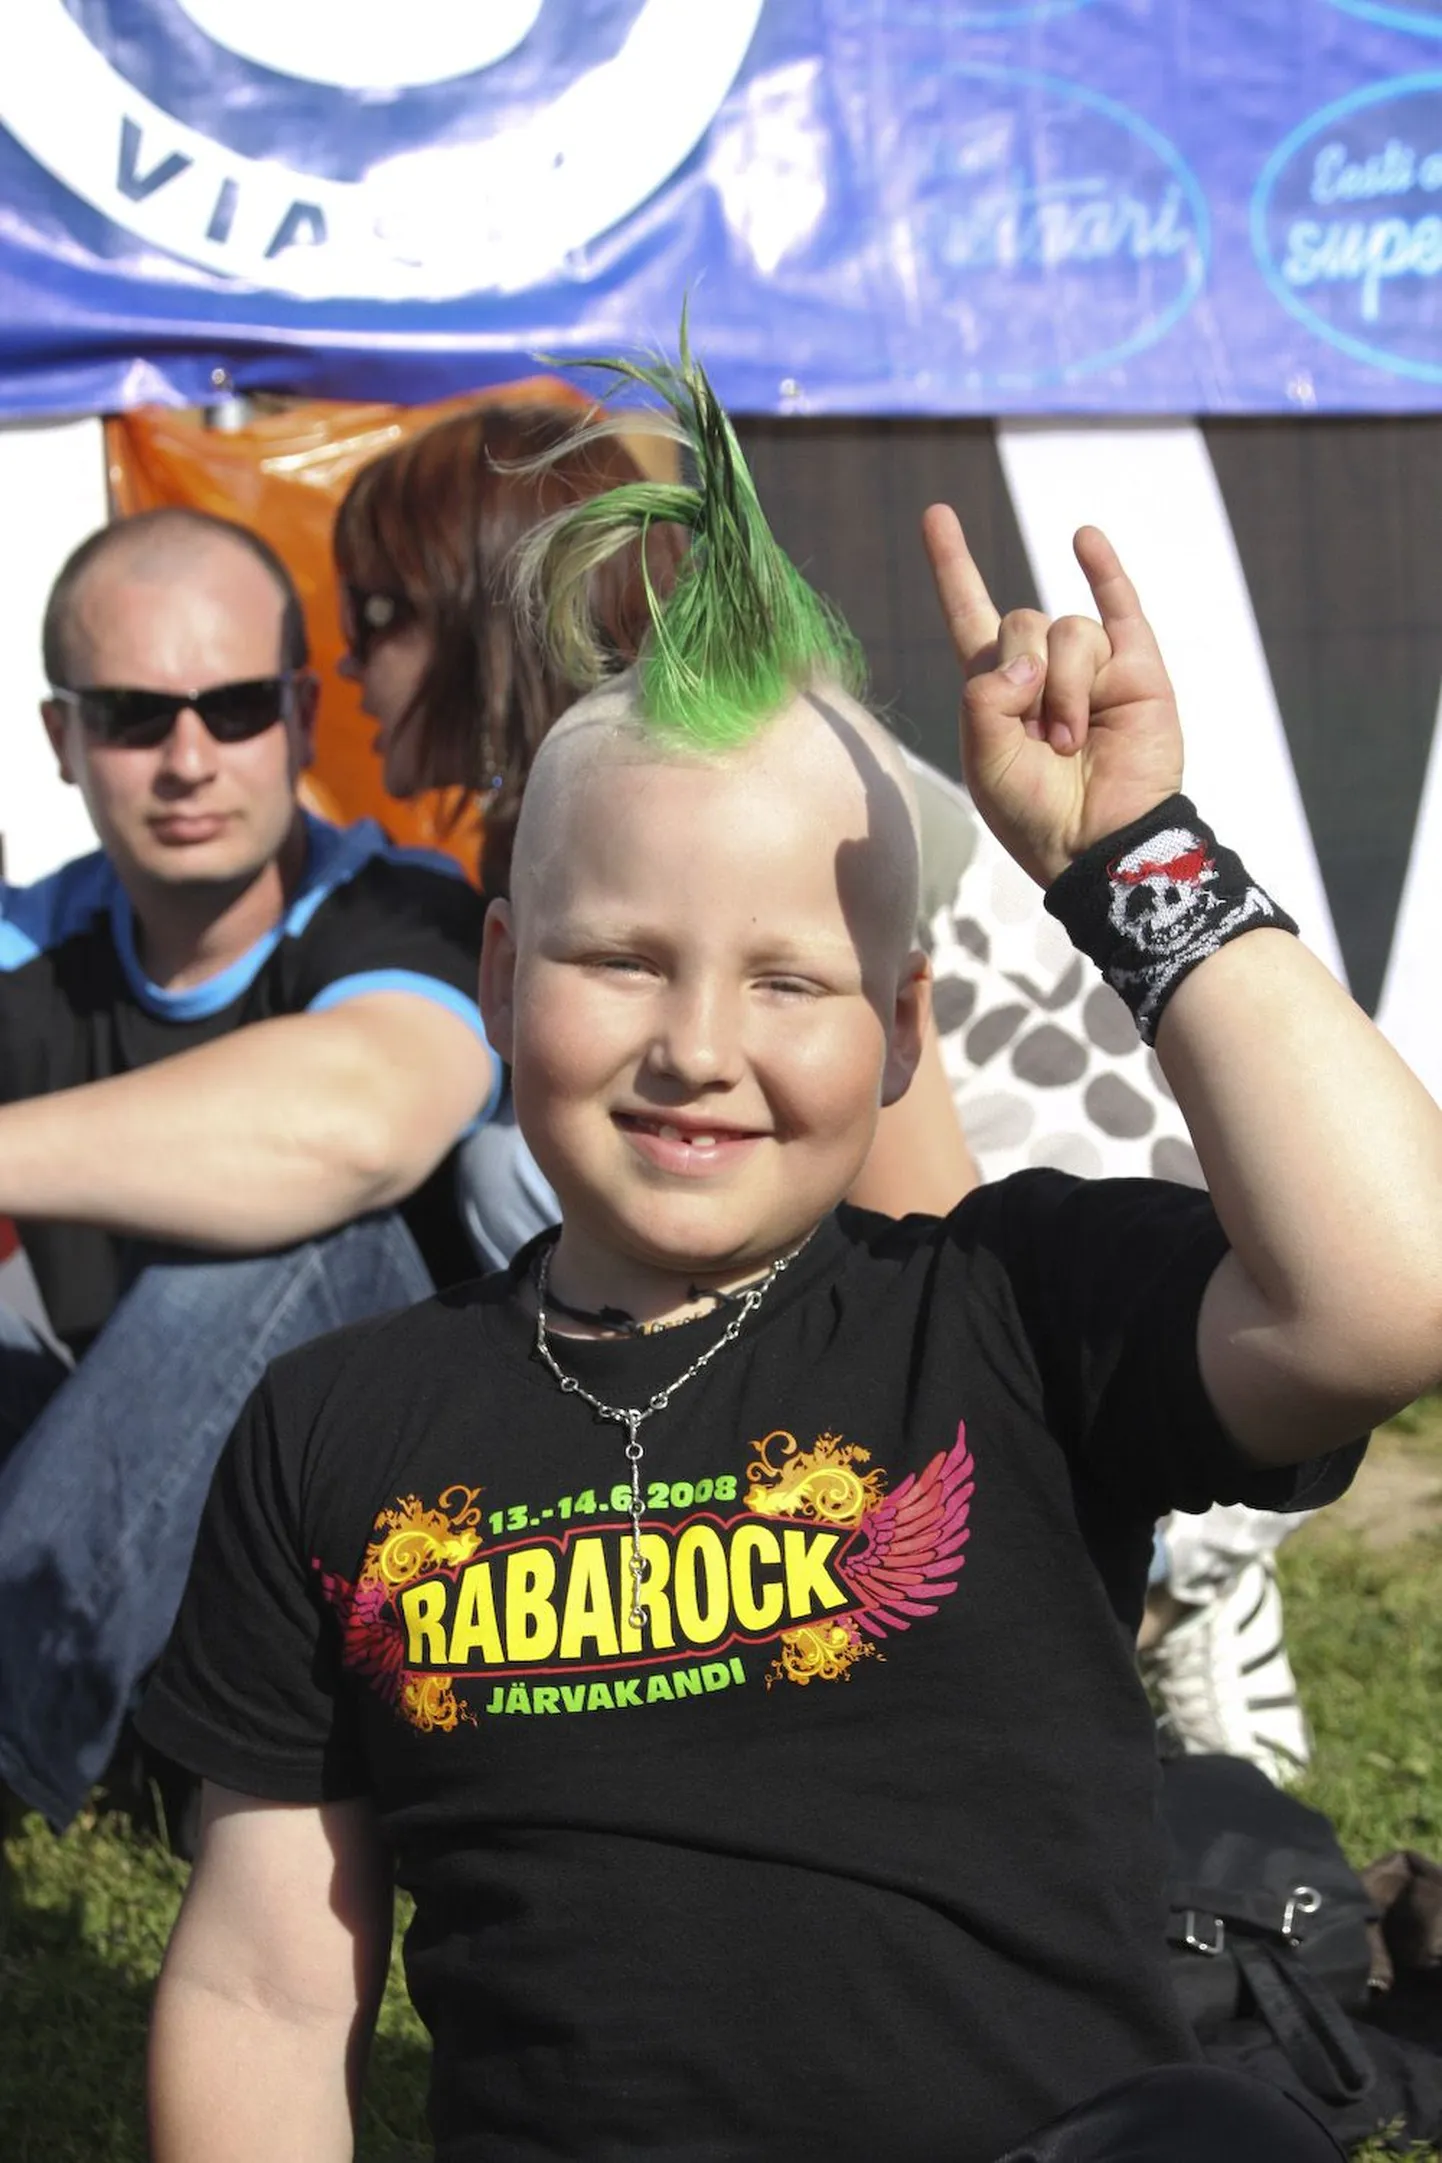 Rabarock 2008 - 6 aastane Allan on Rabarocki tulevik.